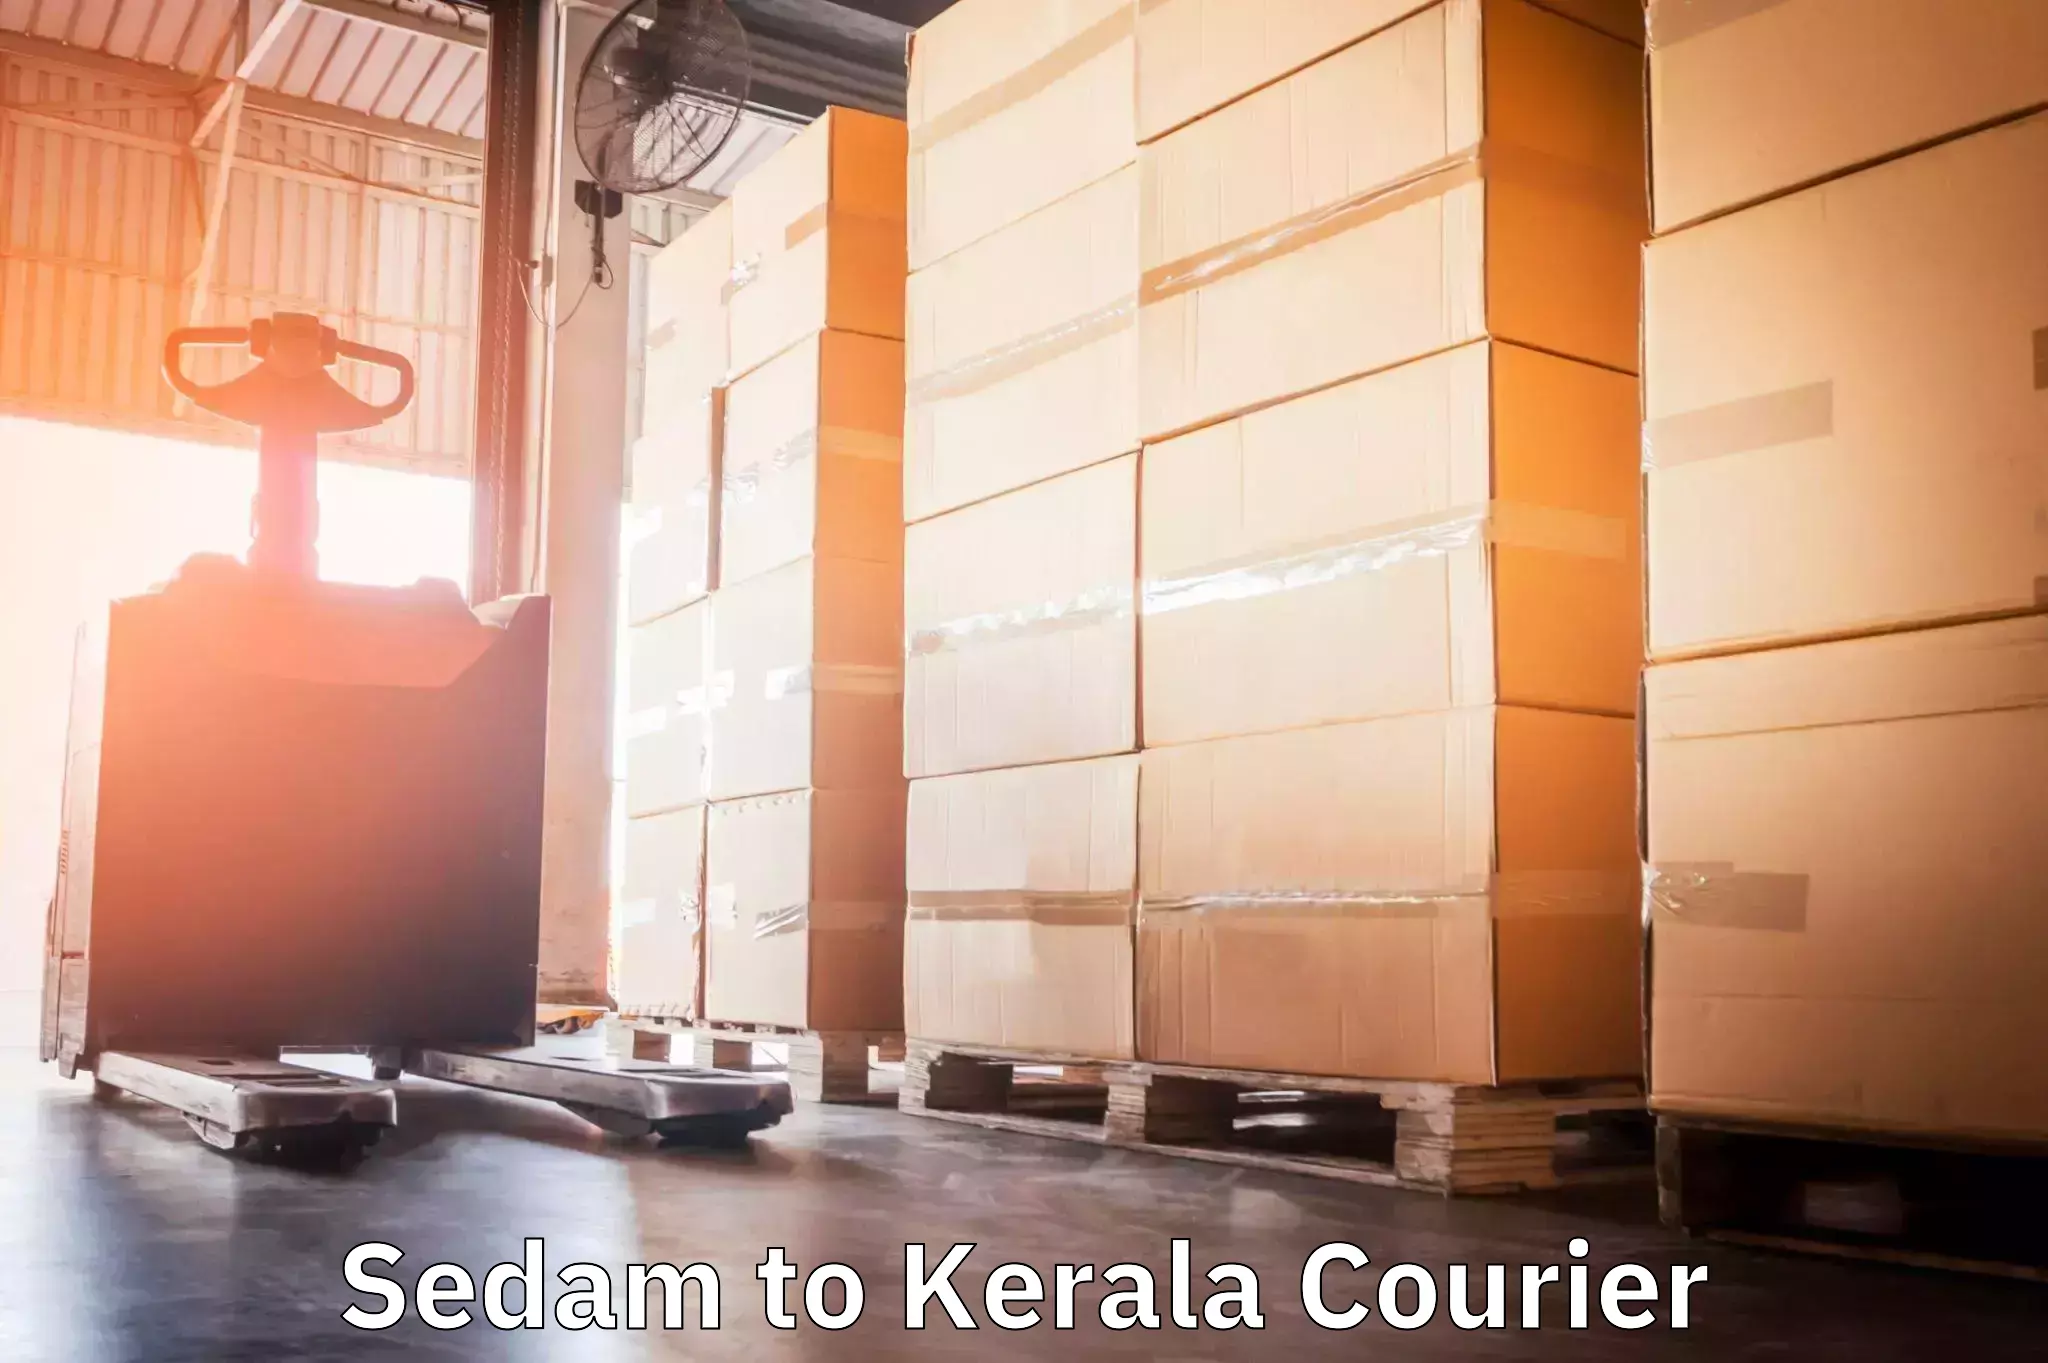 24/7 courier service in Sedam to Neyyattinkara